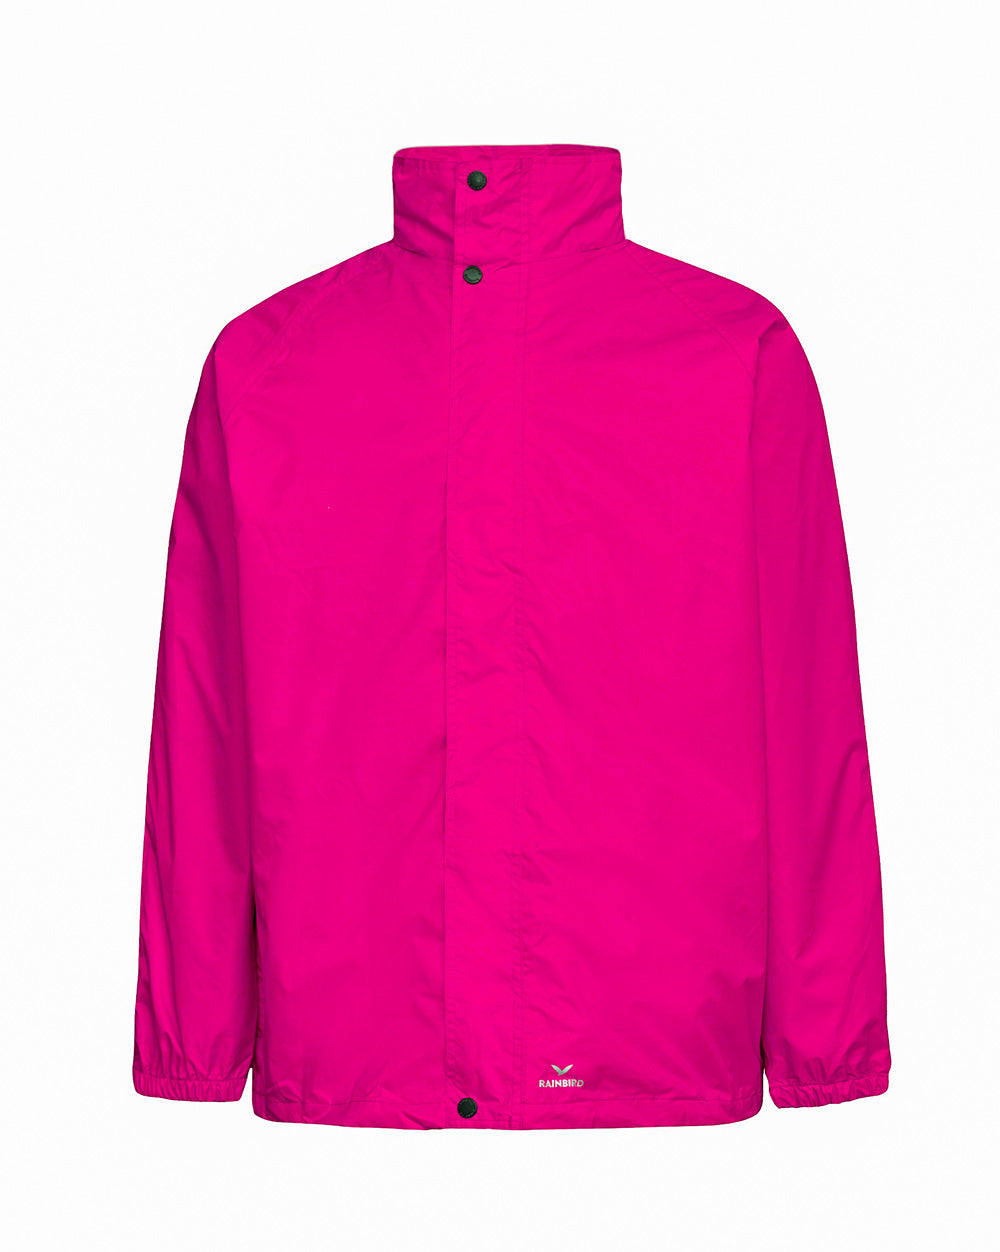 STOWaway Jacket in Raspberry